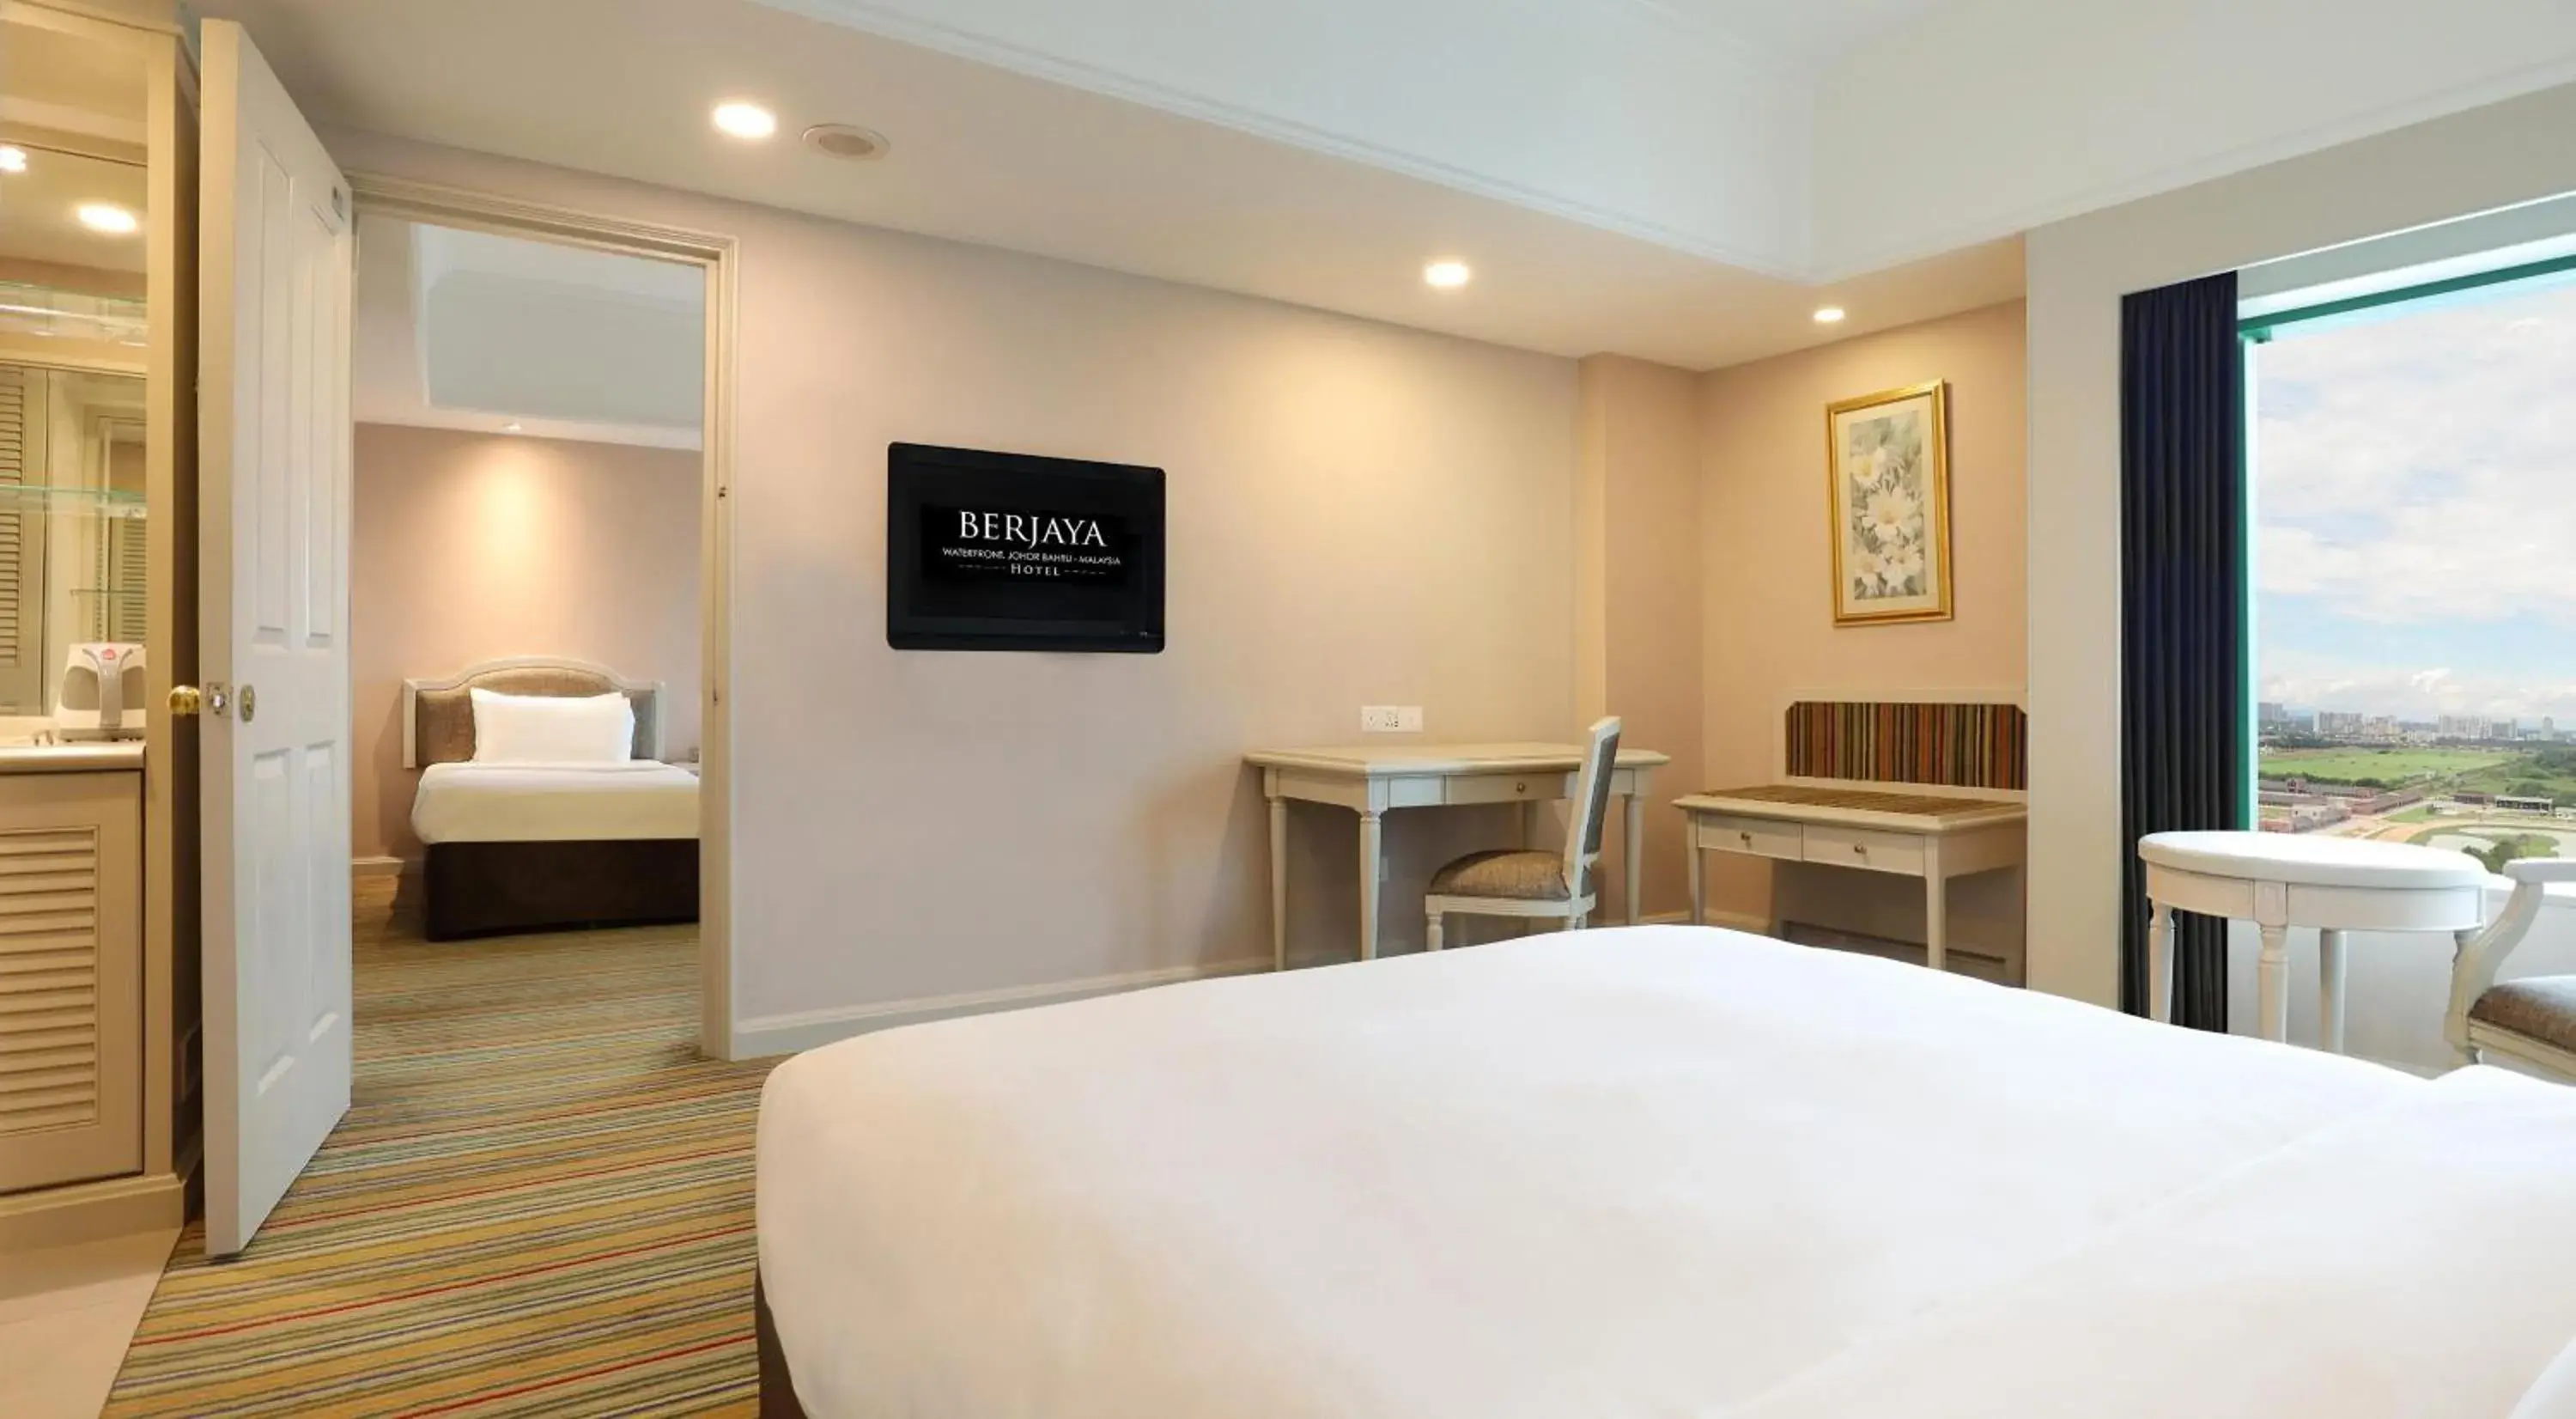 Bed in Berjaya Waterfront Hotel